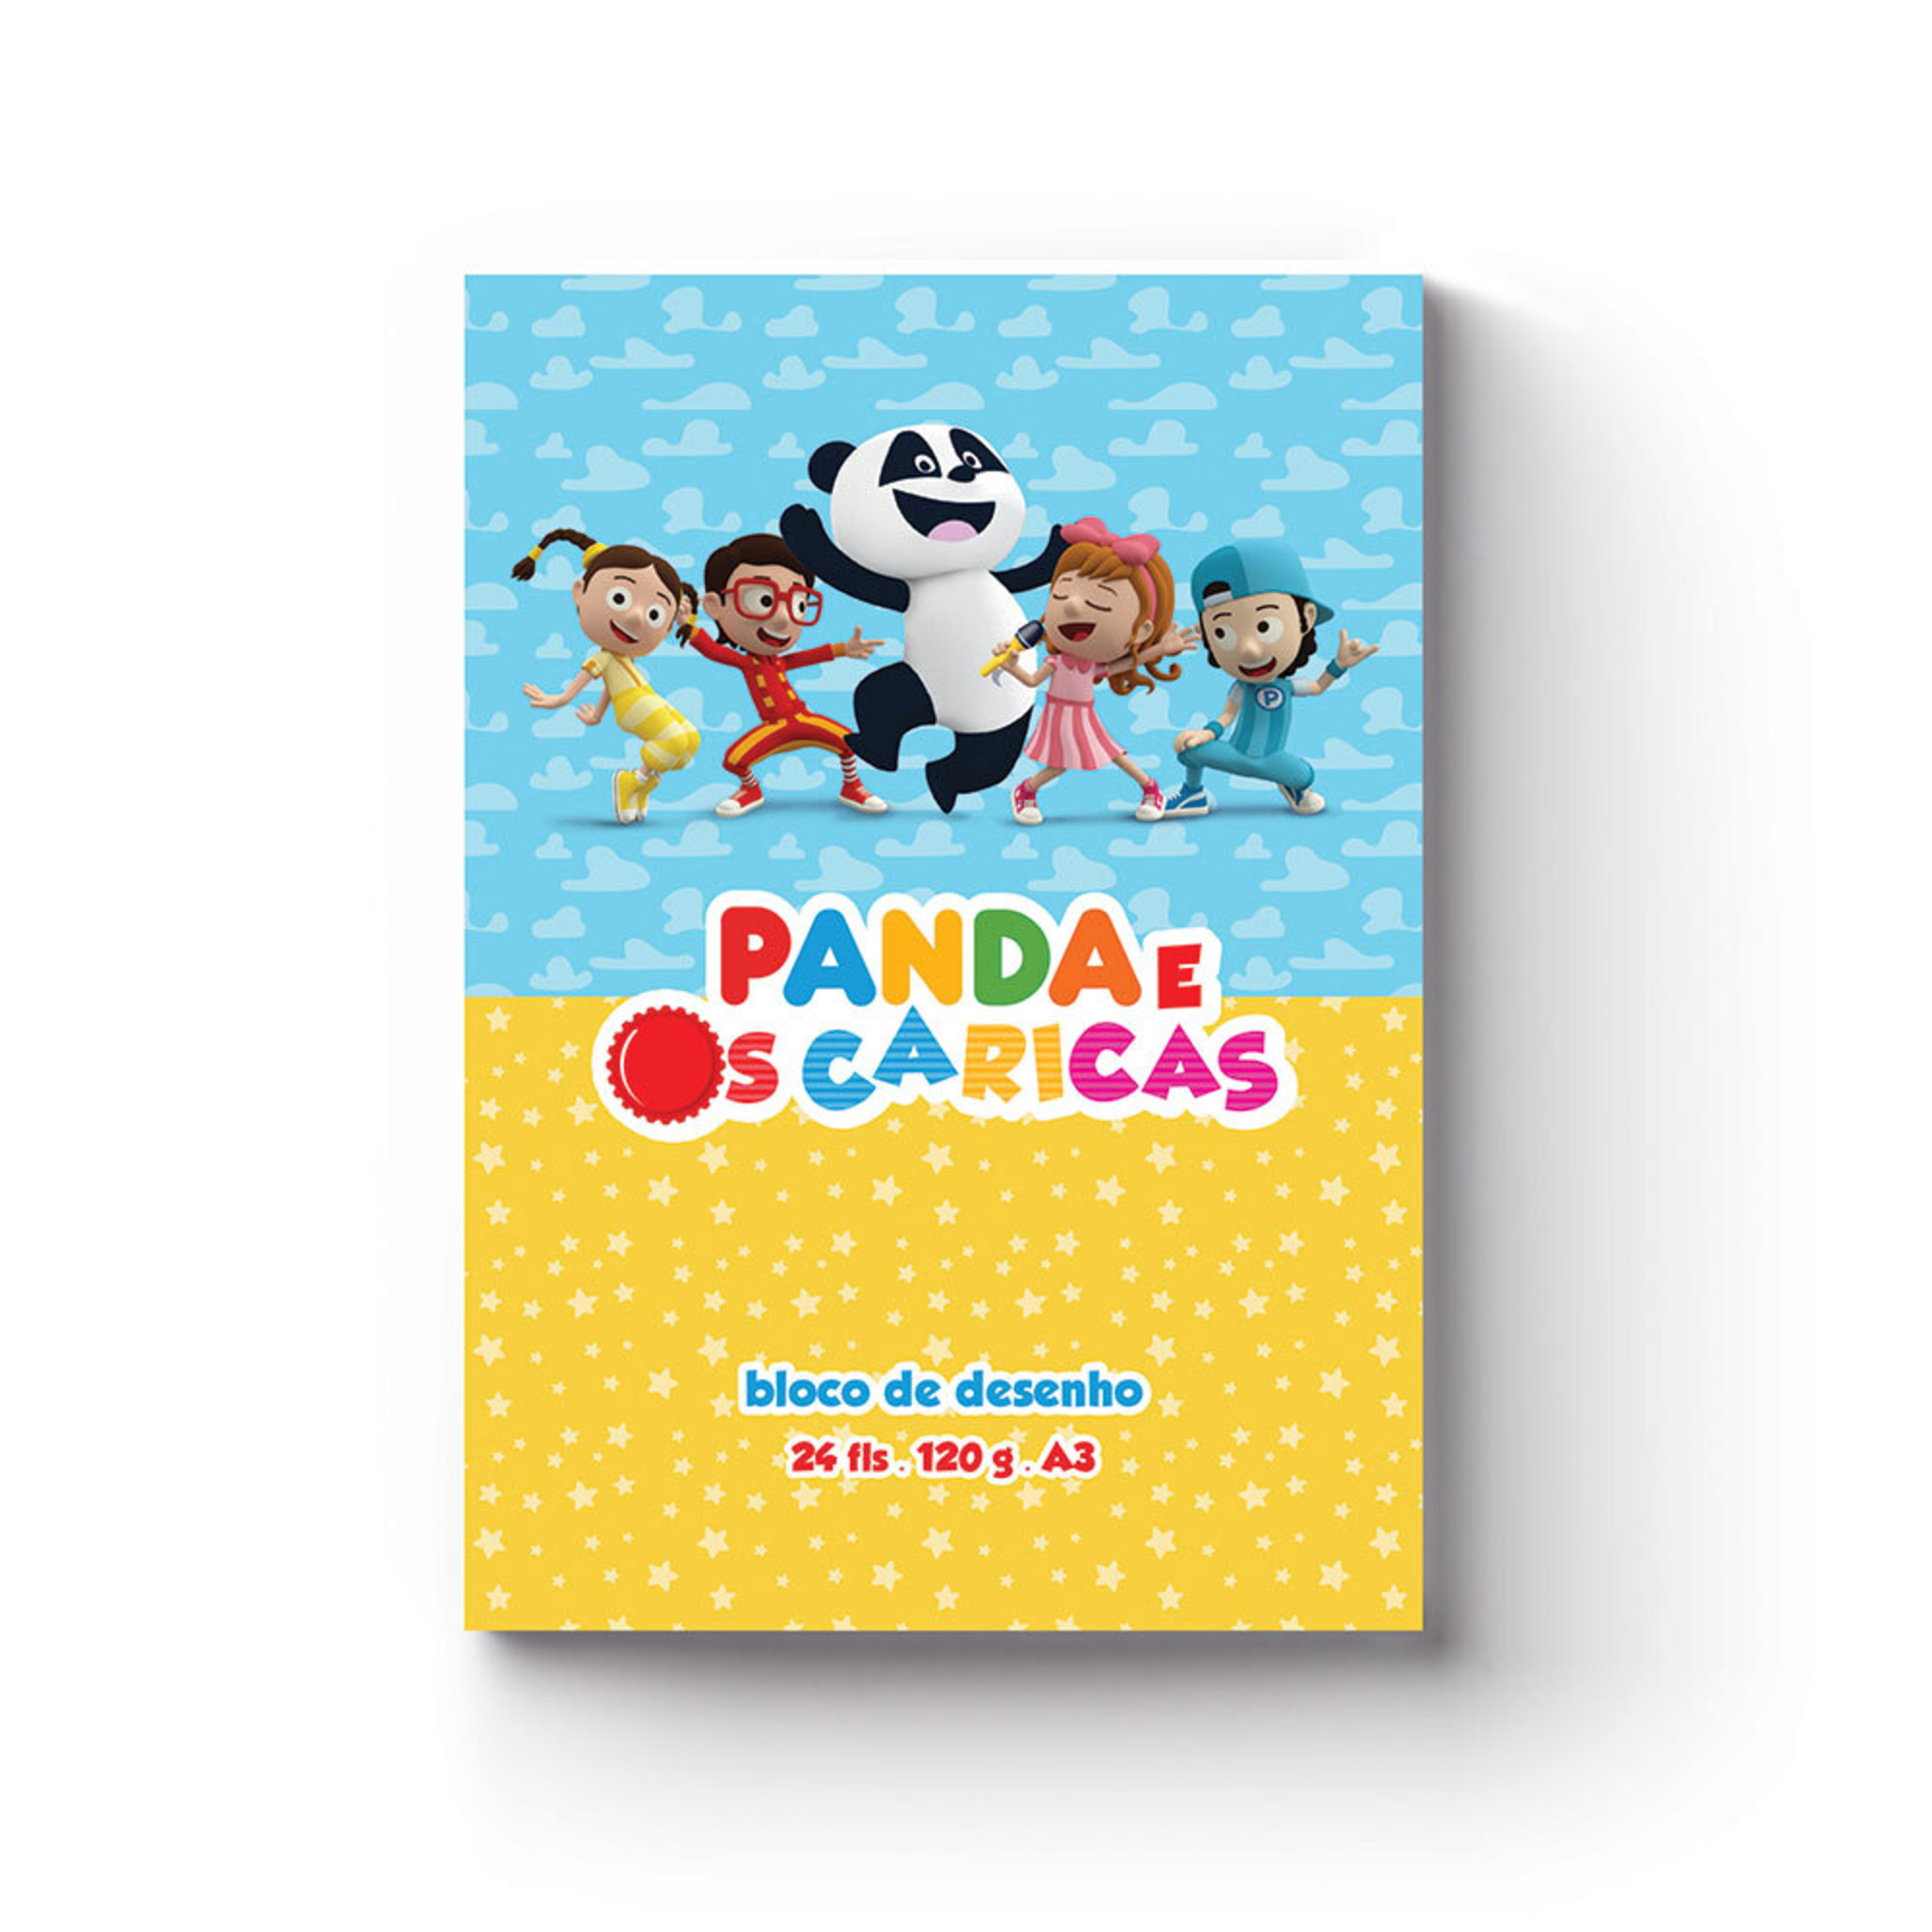 Desenho do Panda para Pintar  Panda desenho, Panda caricas